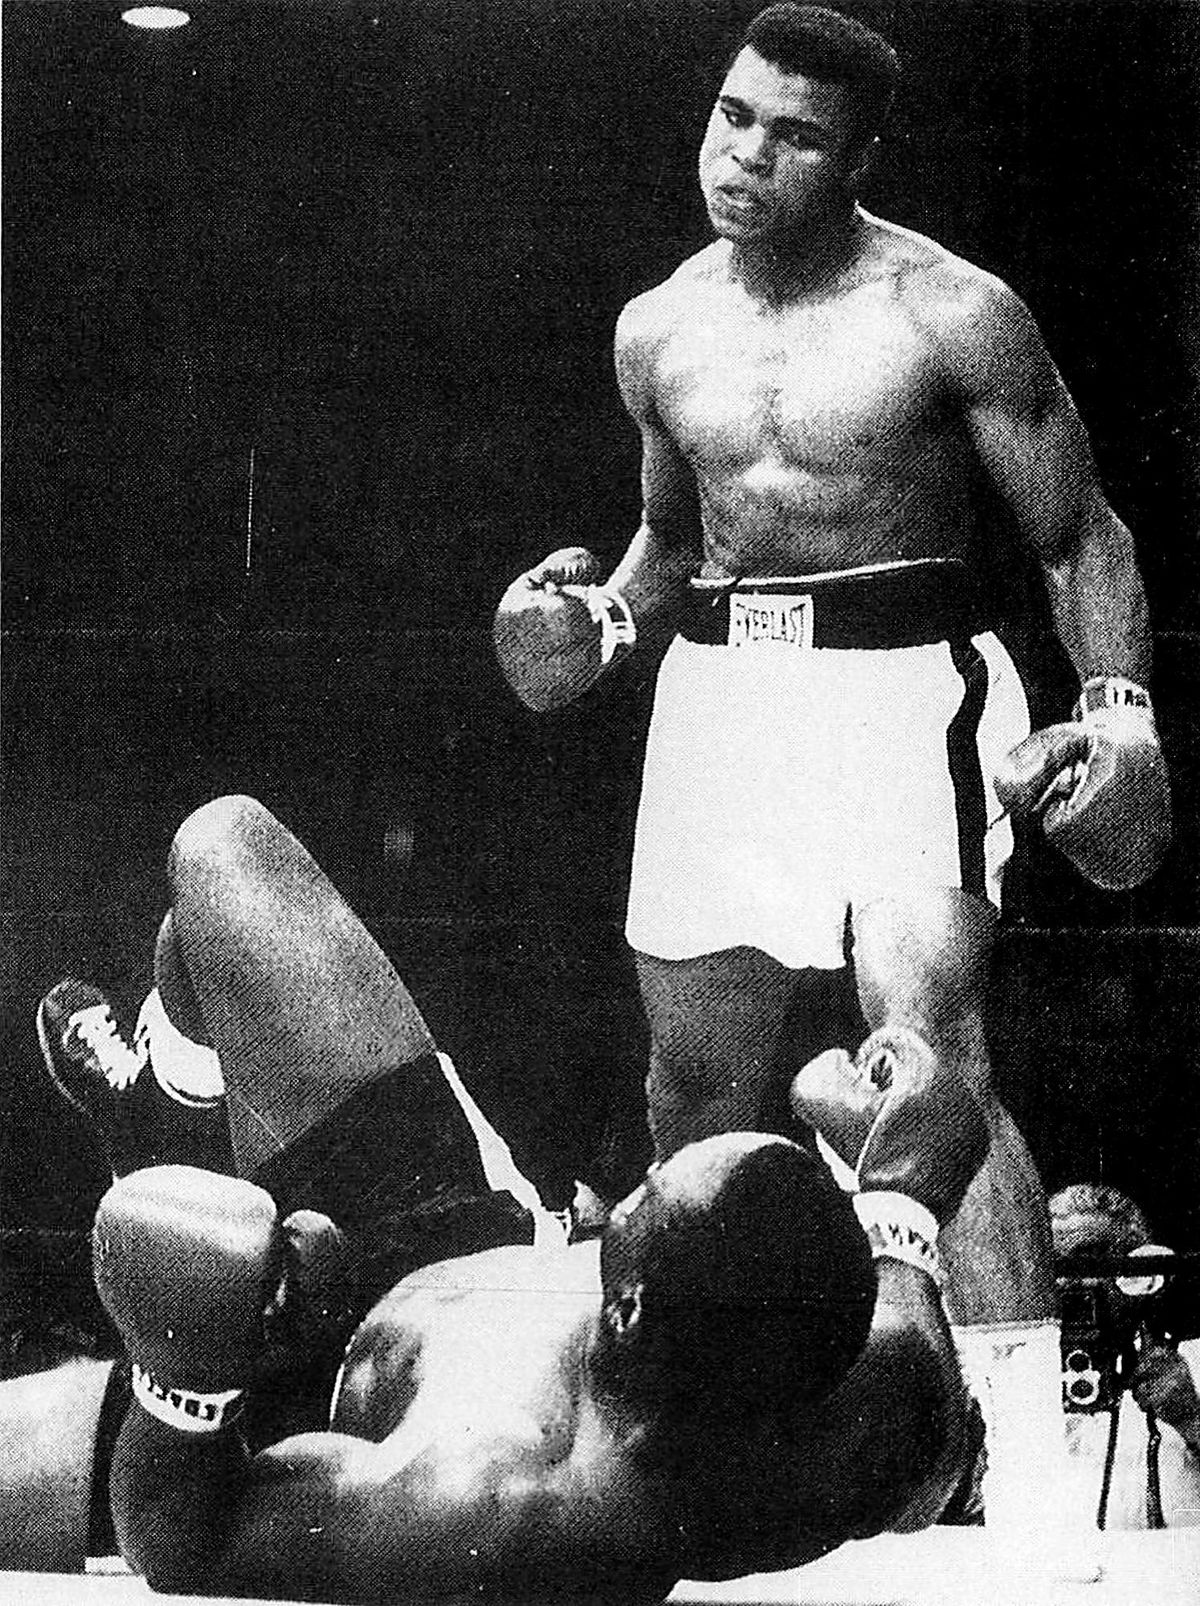 Sonny Liston a földön, Cassius Clay könyörtelen – állítólag ez a meccs is bunda volt onny Liston a földön, Cassius Clay könyörtelen – állítólag ez a meccs is bunda volt